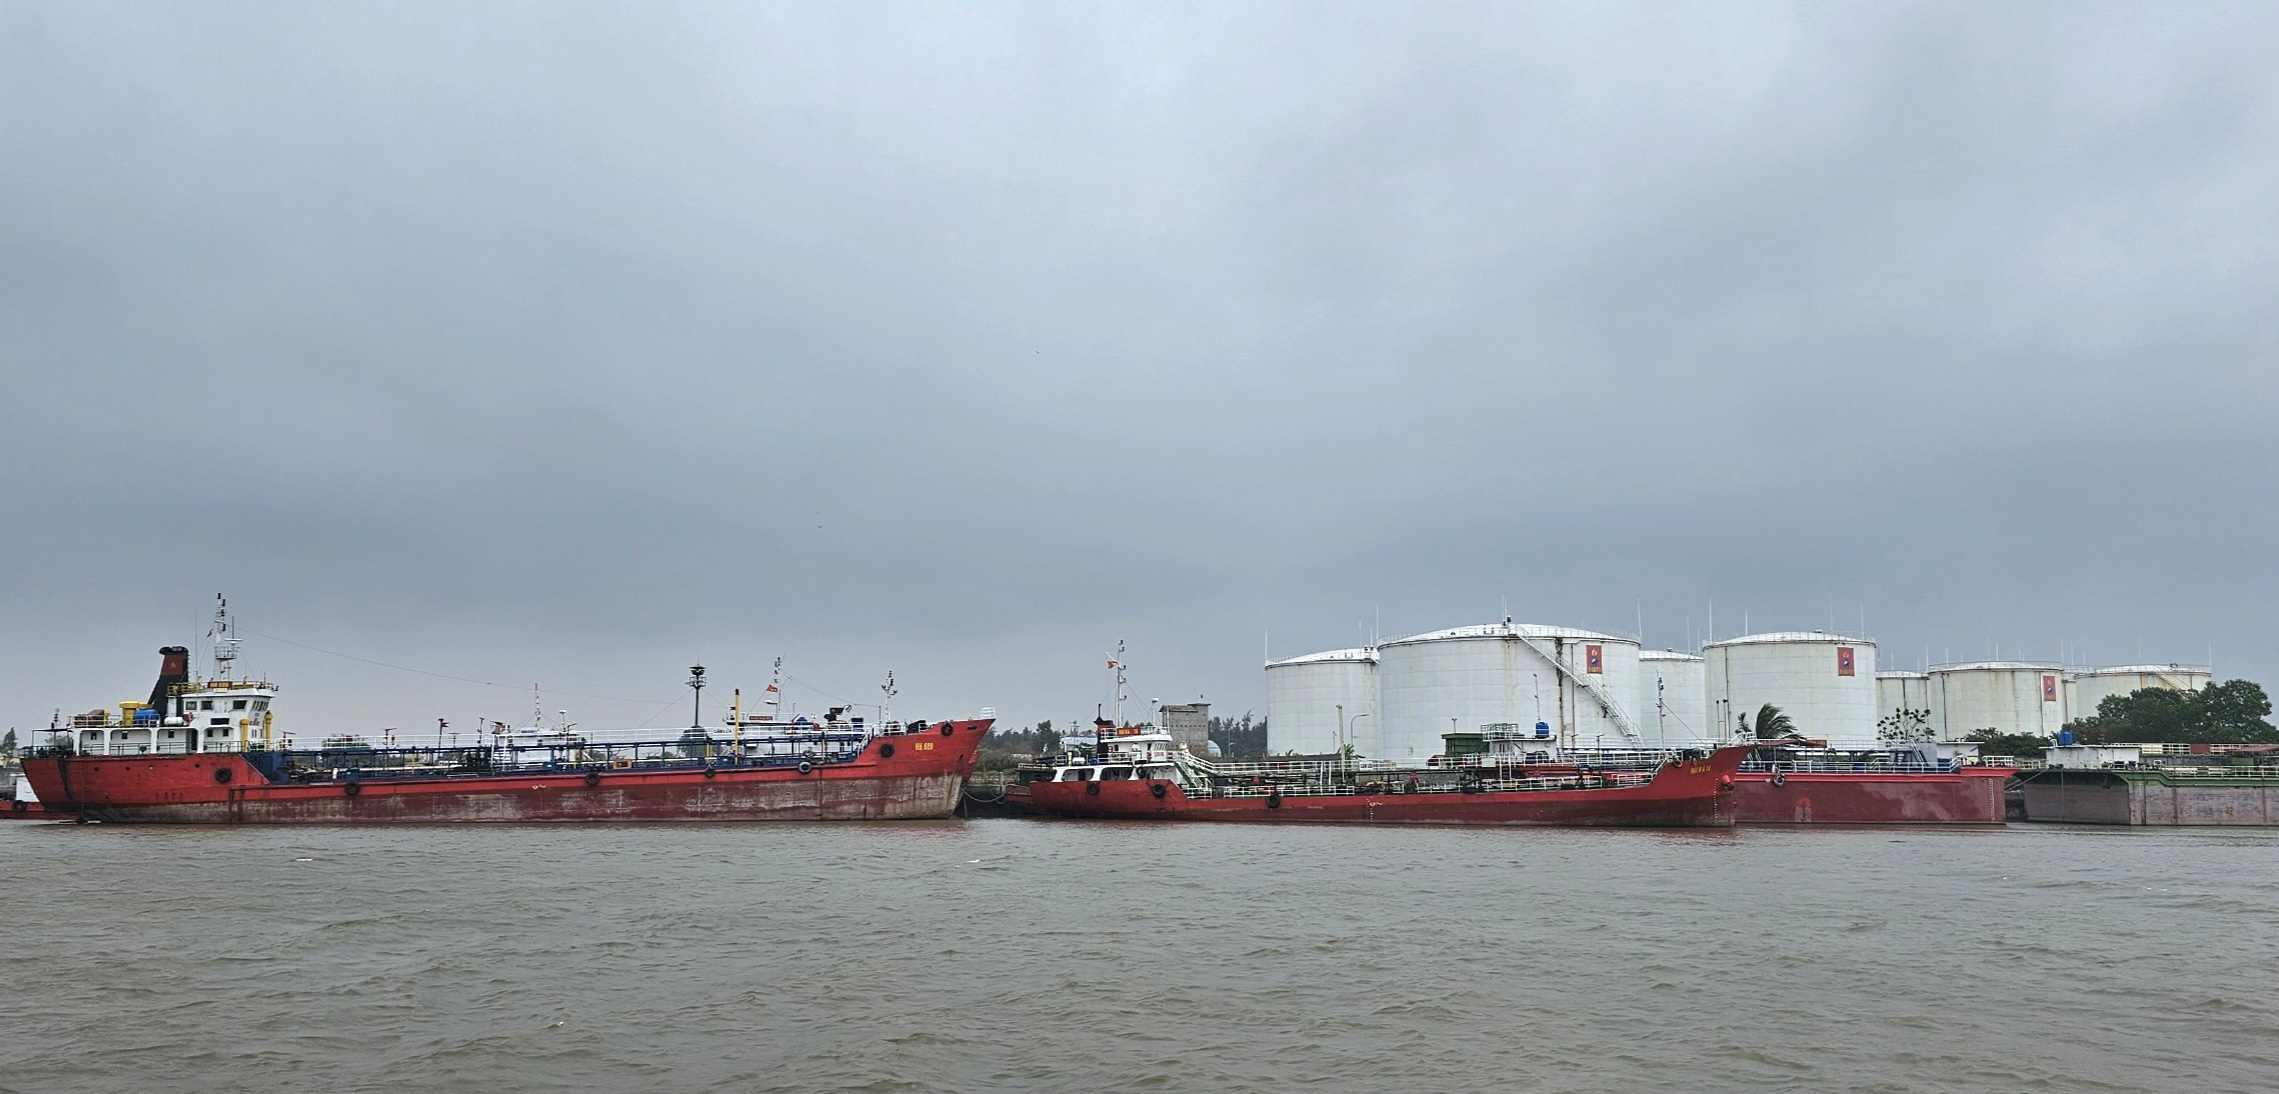 Tổng kho xăng dầu của Hải Hà Petro và các tàu chở dầu đã bị cơ quan điều tra niêm phong, quản lý từ hôm 10.1. Ảnh: Nam Hồng